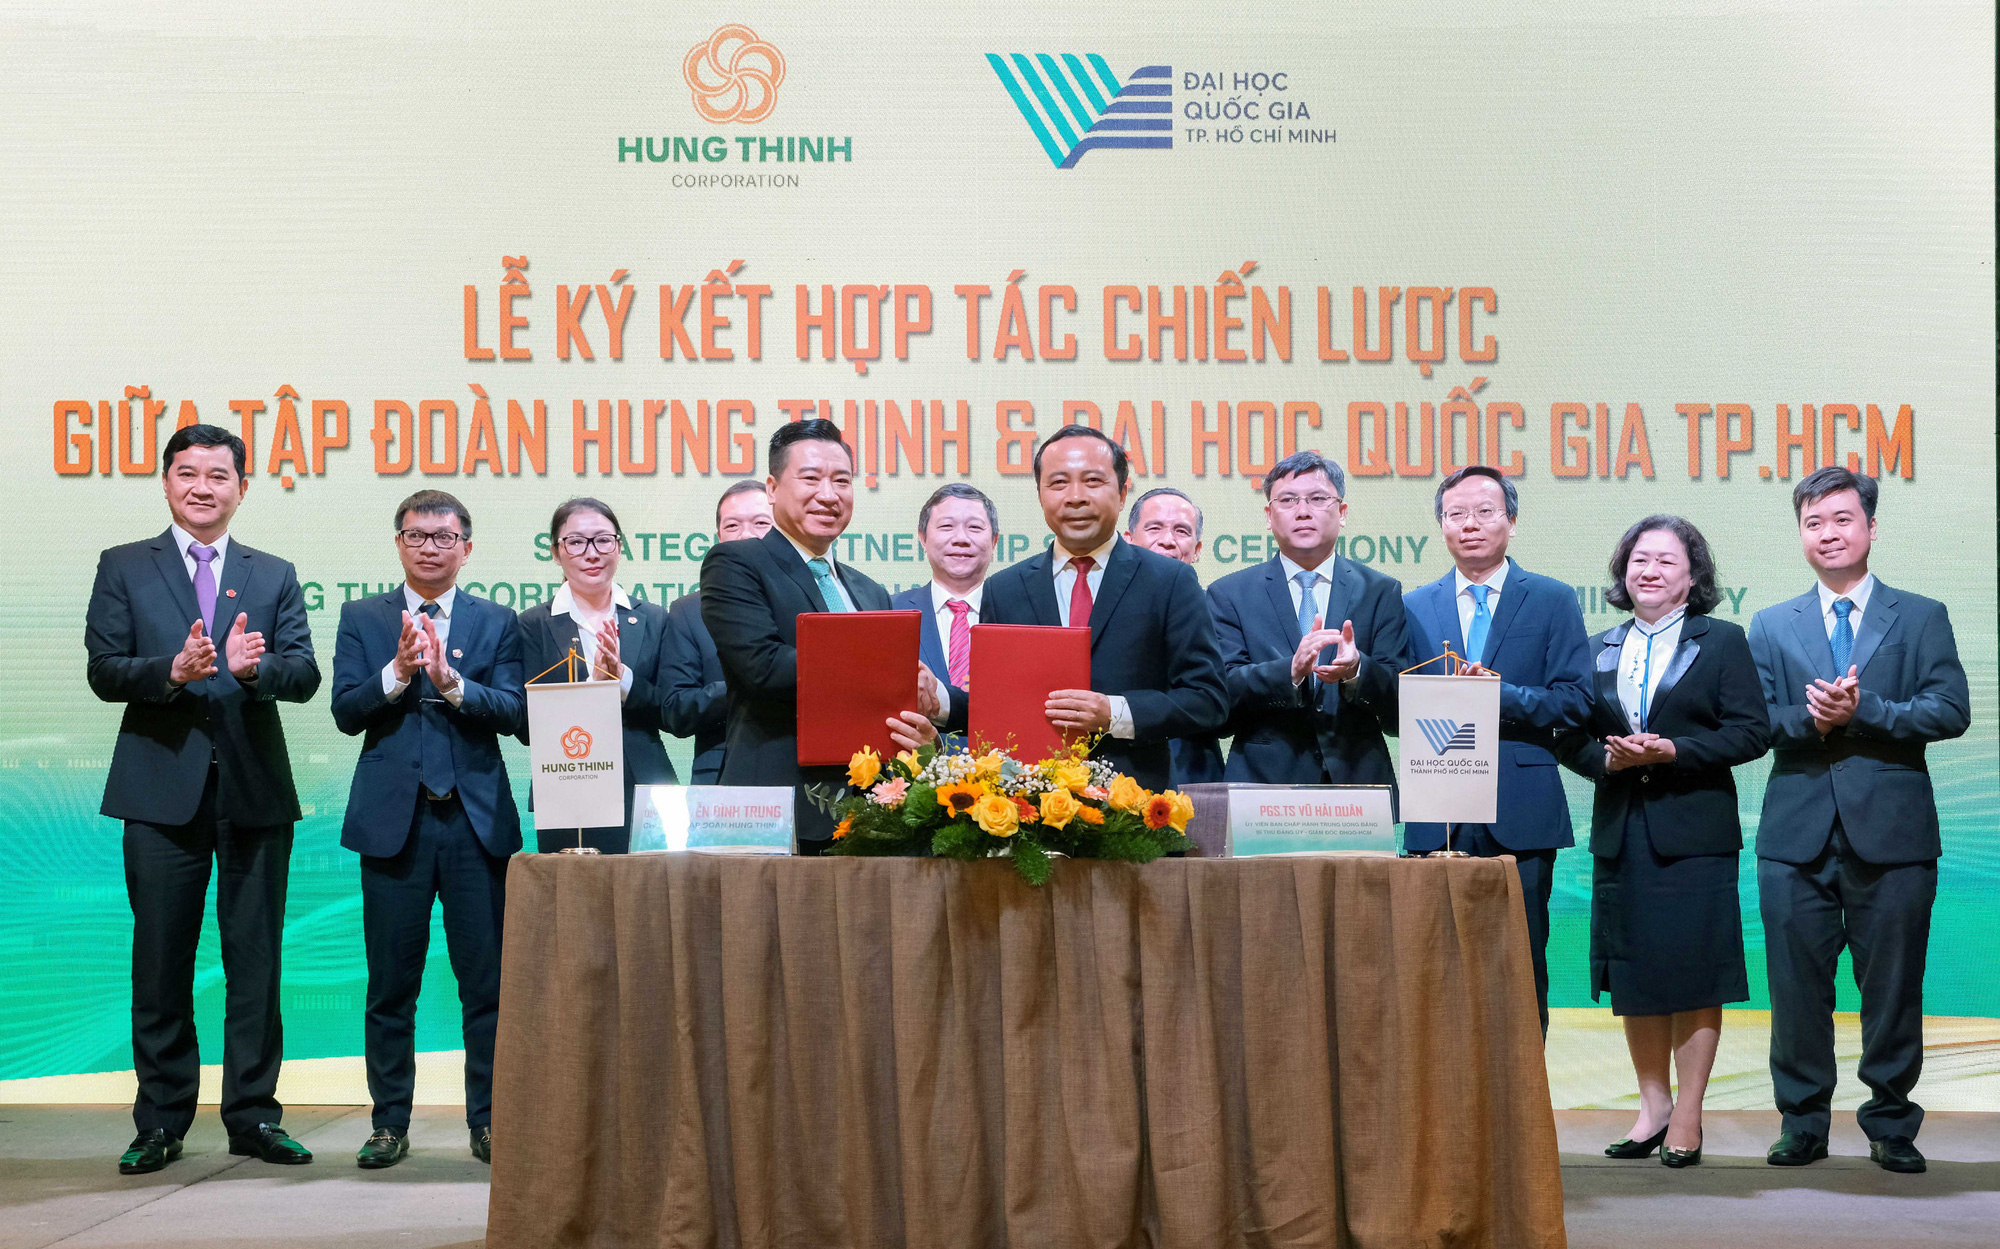 Tập đoàn Hưng Thịnh và ĐHQG-HCM ký kết hợp tác chiến lược